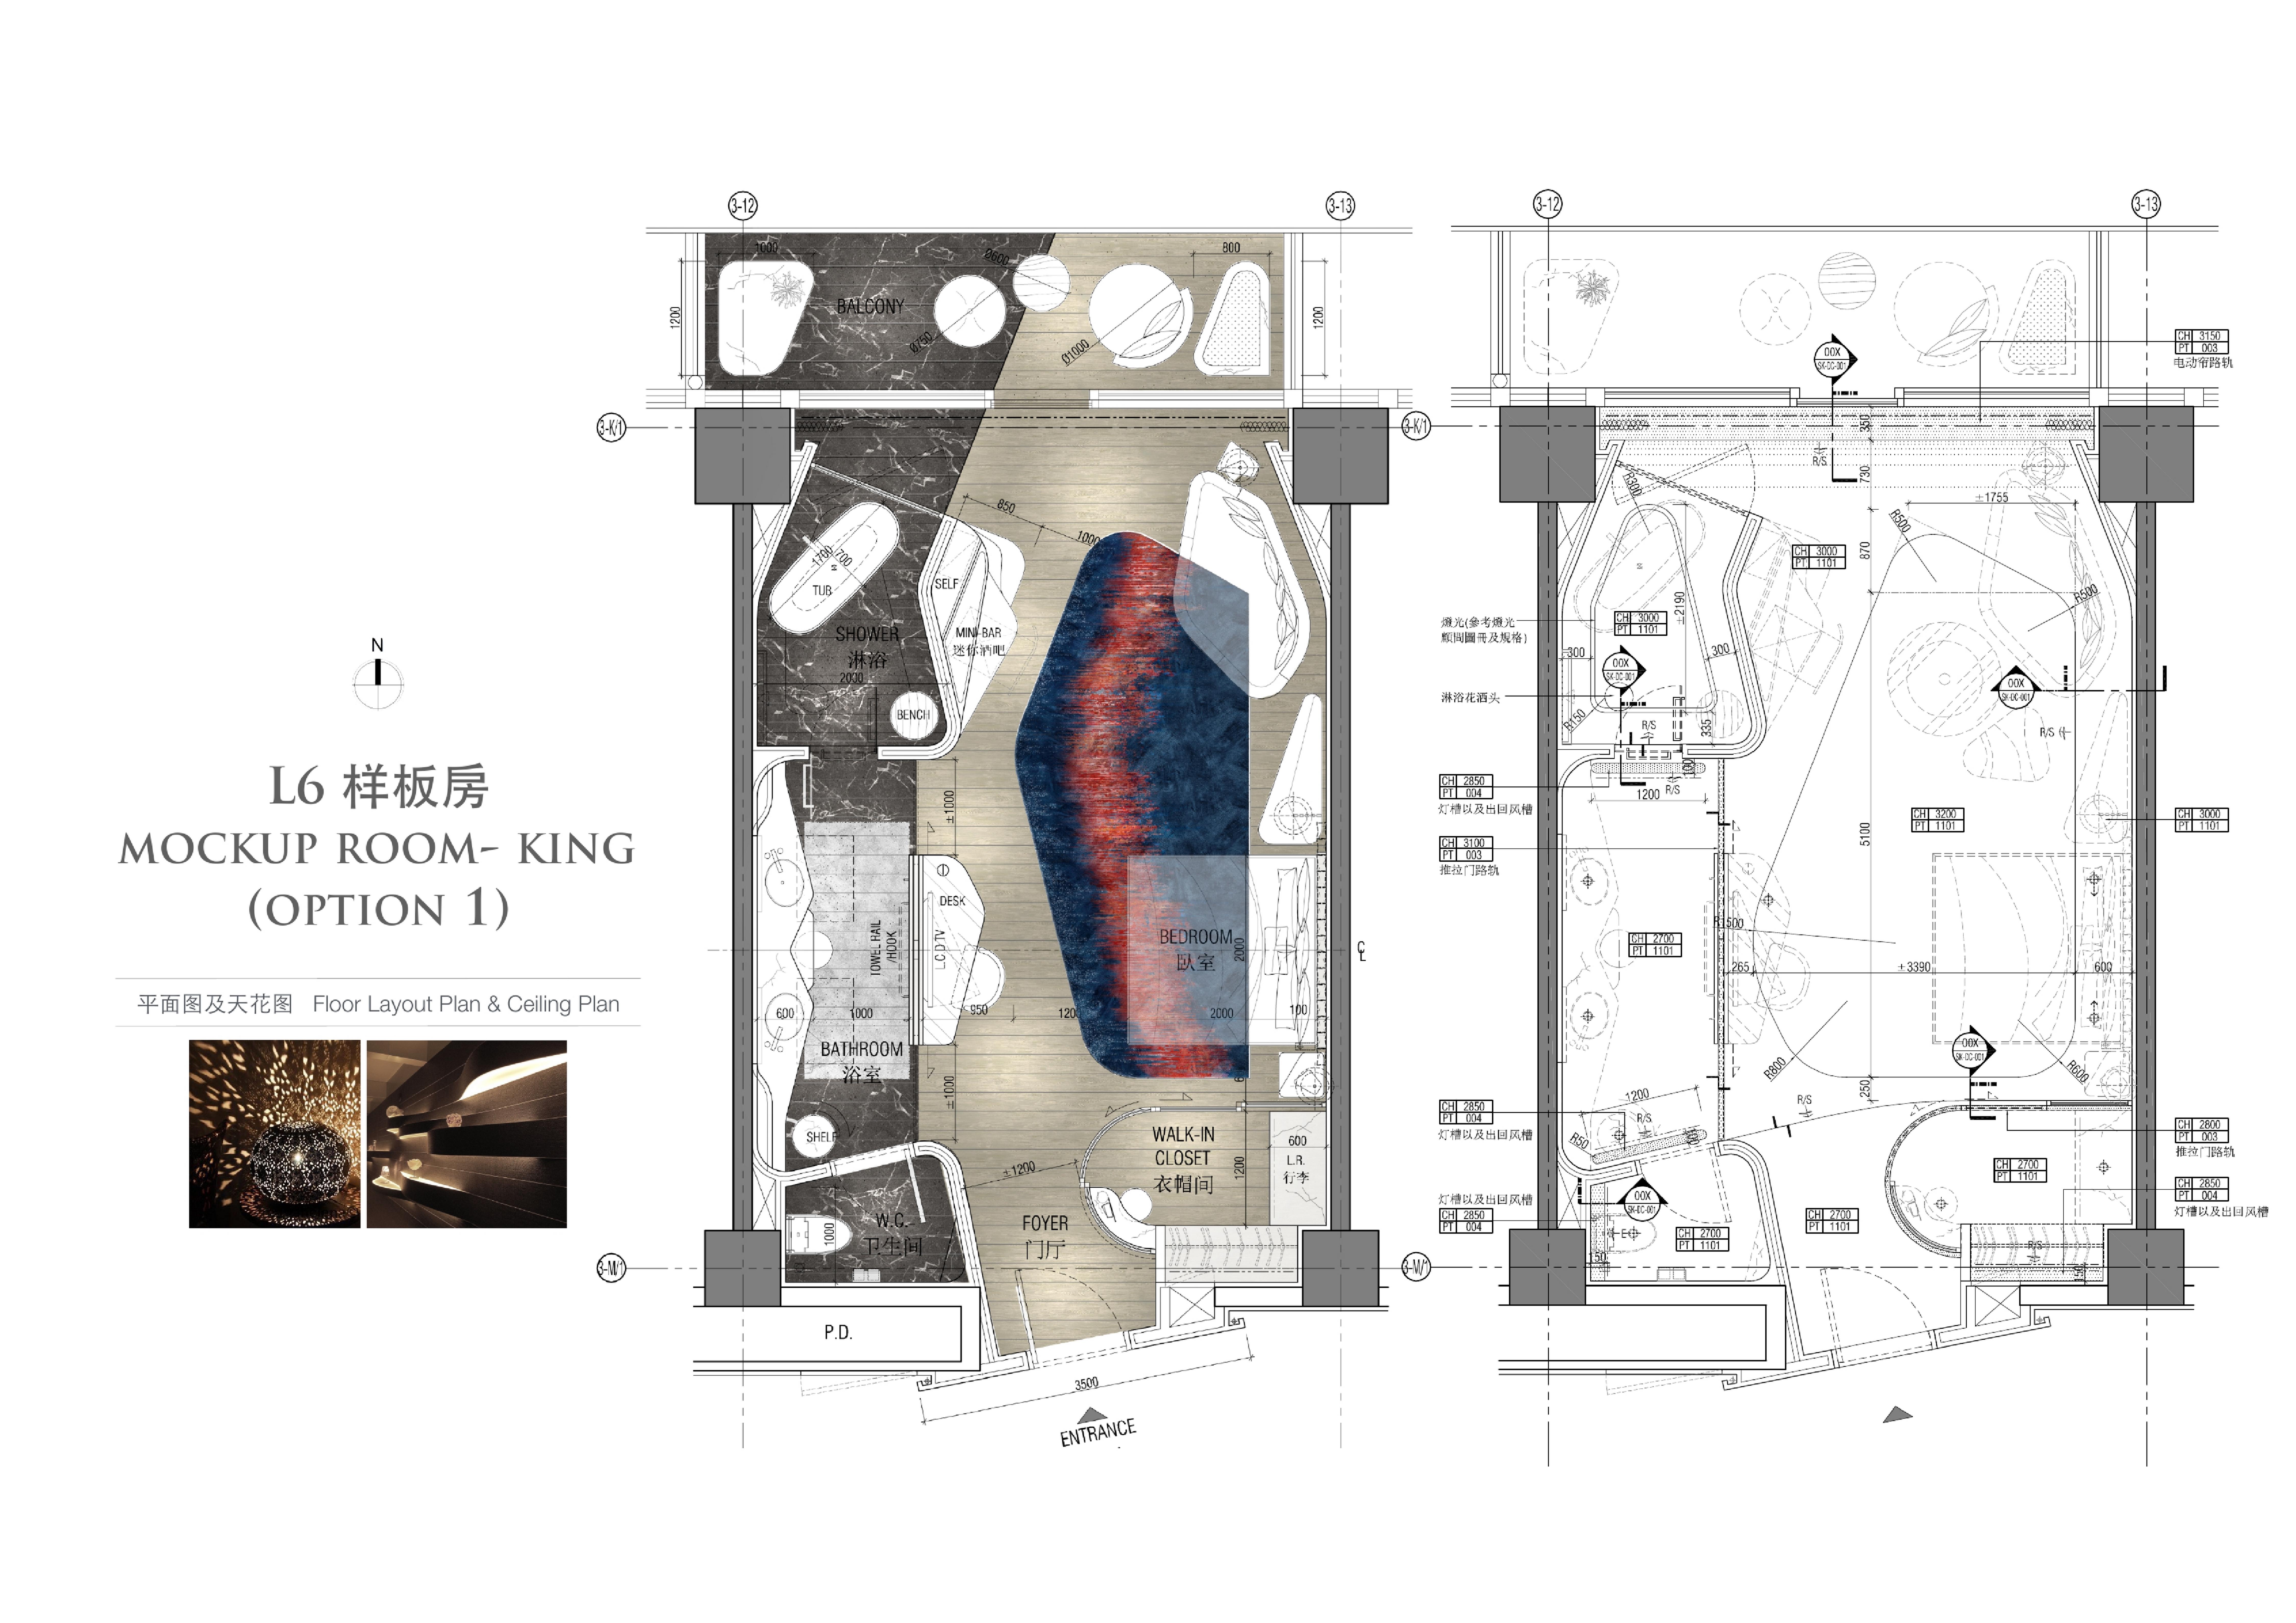 abconcept西安万众w酒店平面手稿效果图室内设计概念方案作品1000mb